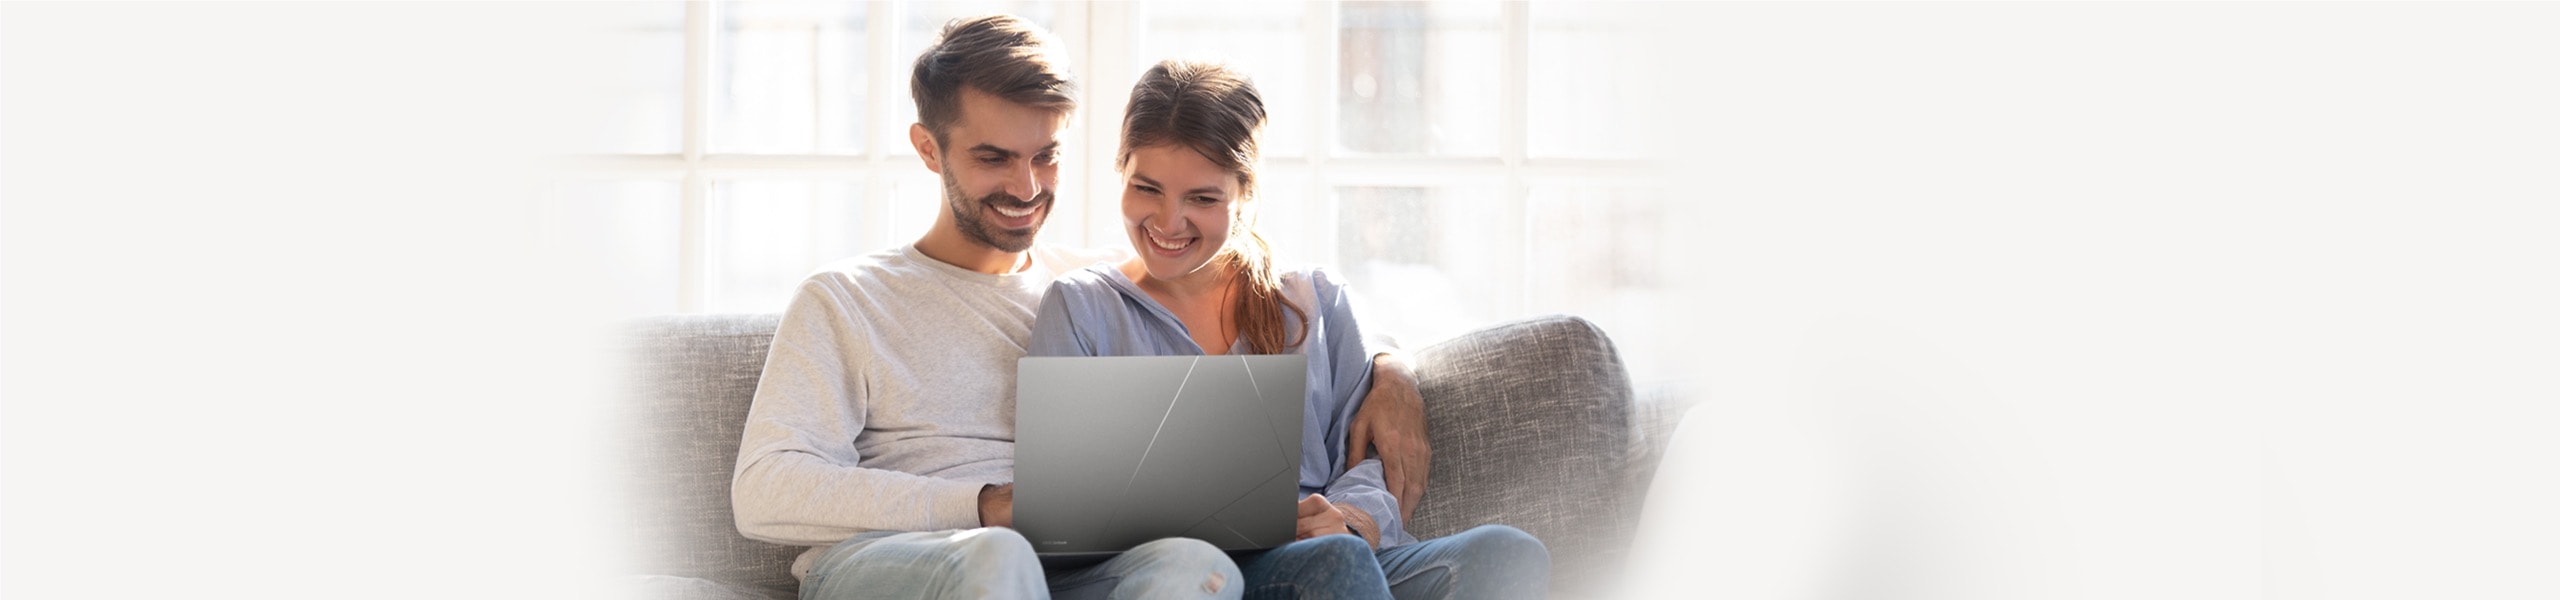 Une femme et un homme assis ensemble et utilisant un ordinateur portable